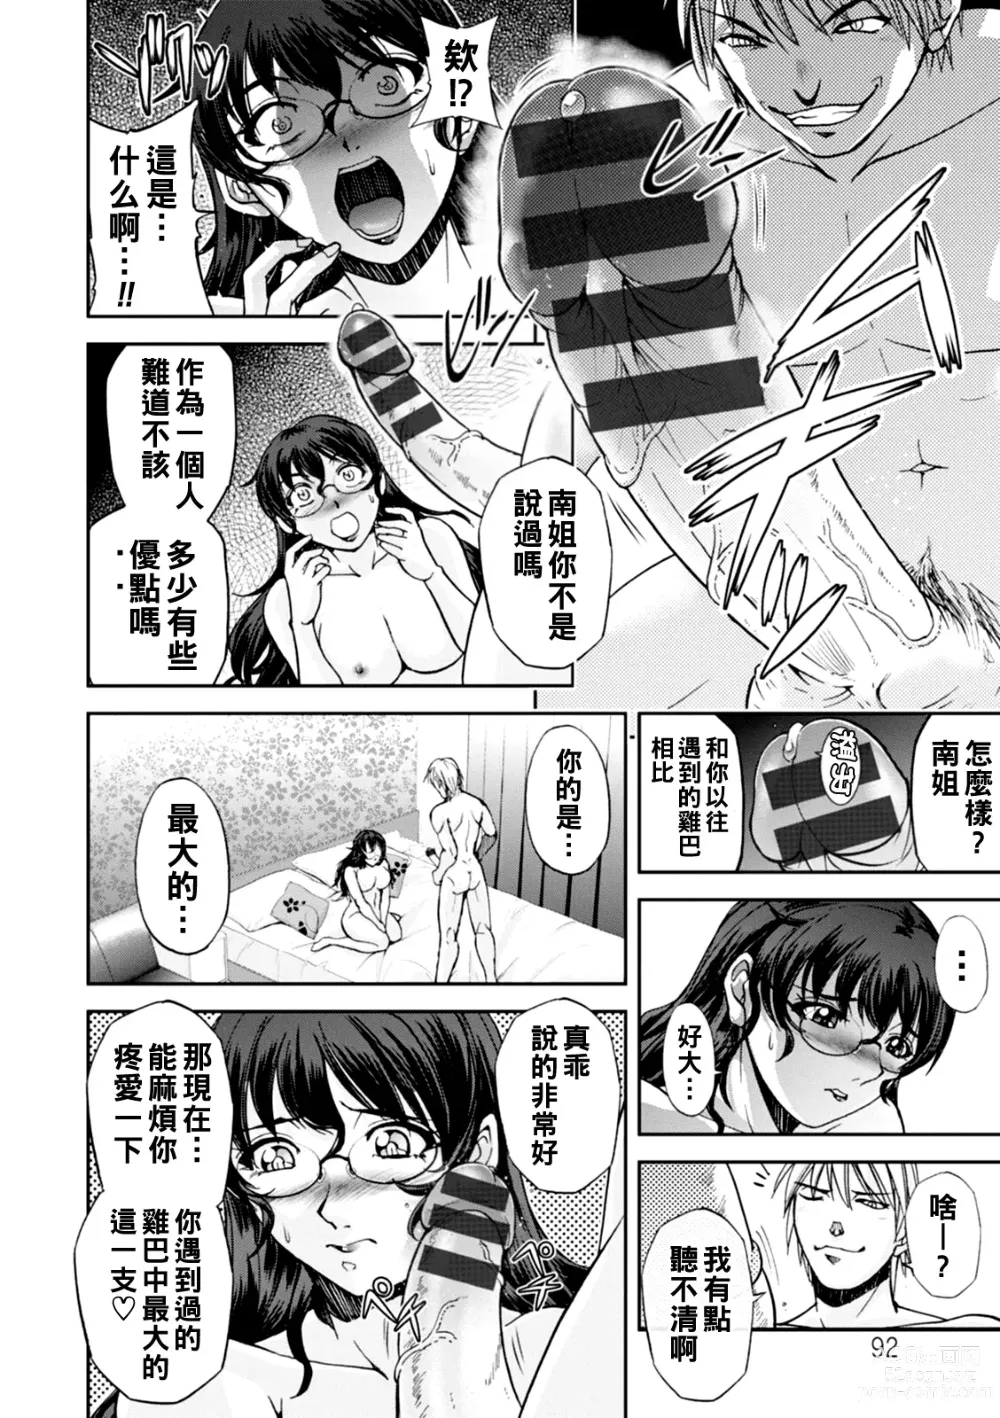 Page 13 of manga Maruhadaka no Minami-san Ch. 1-4